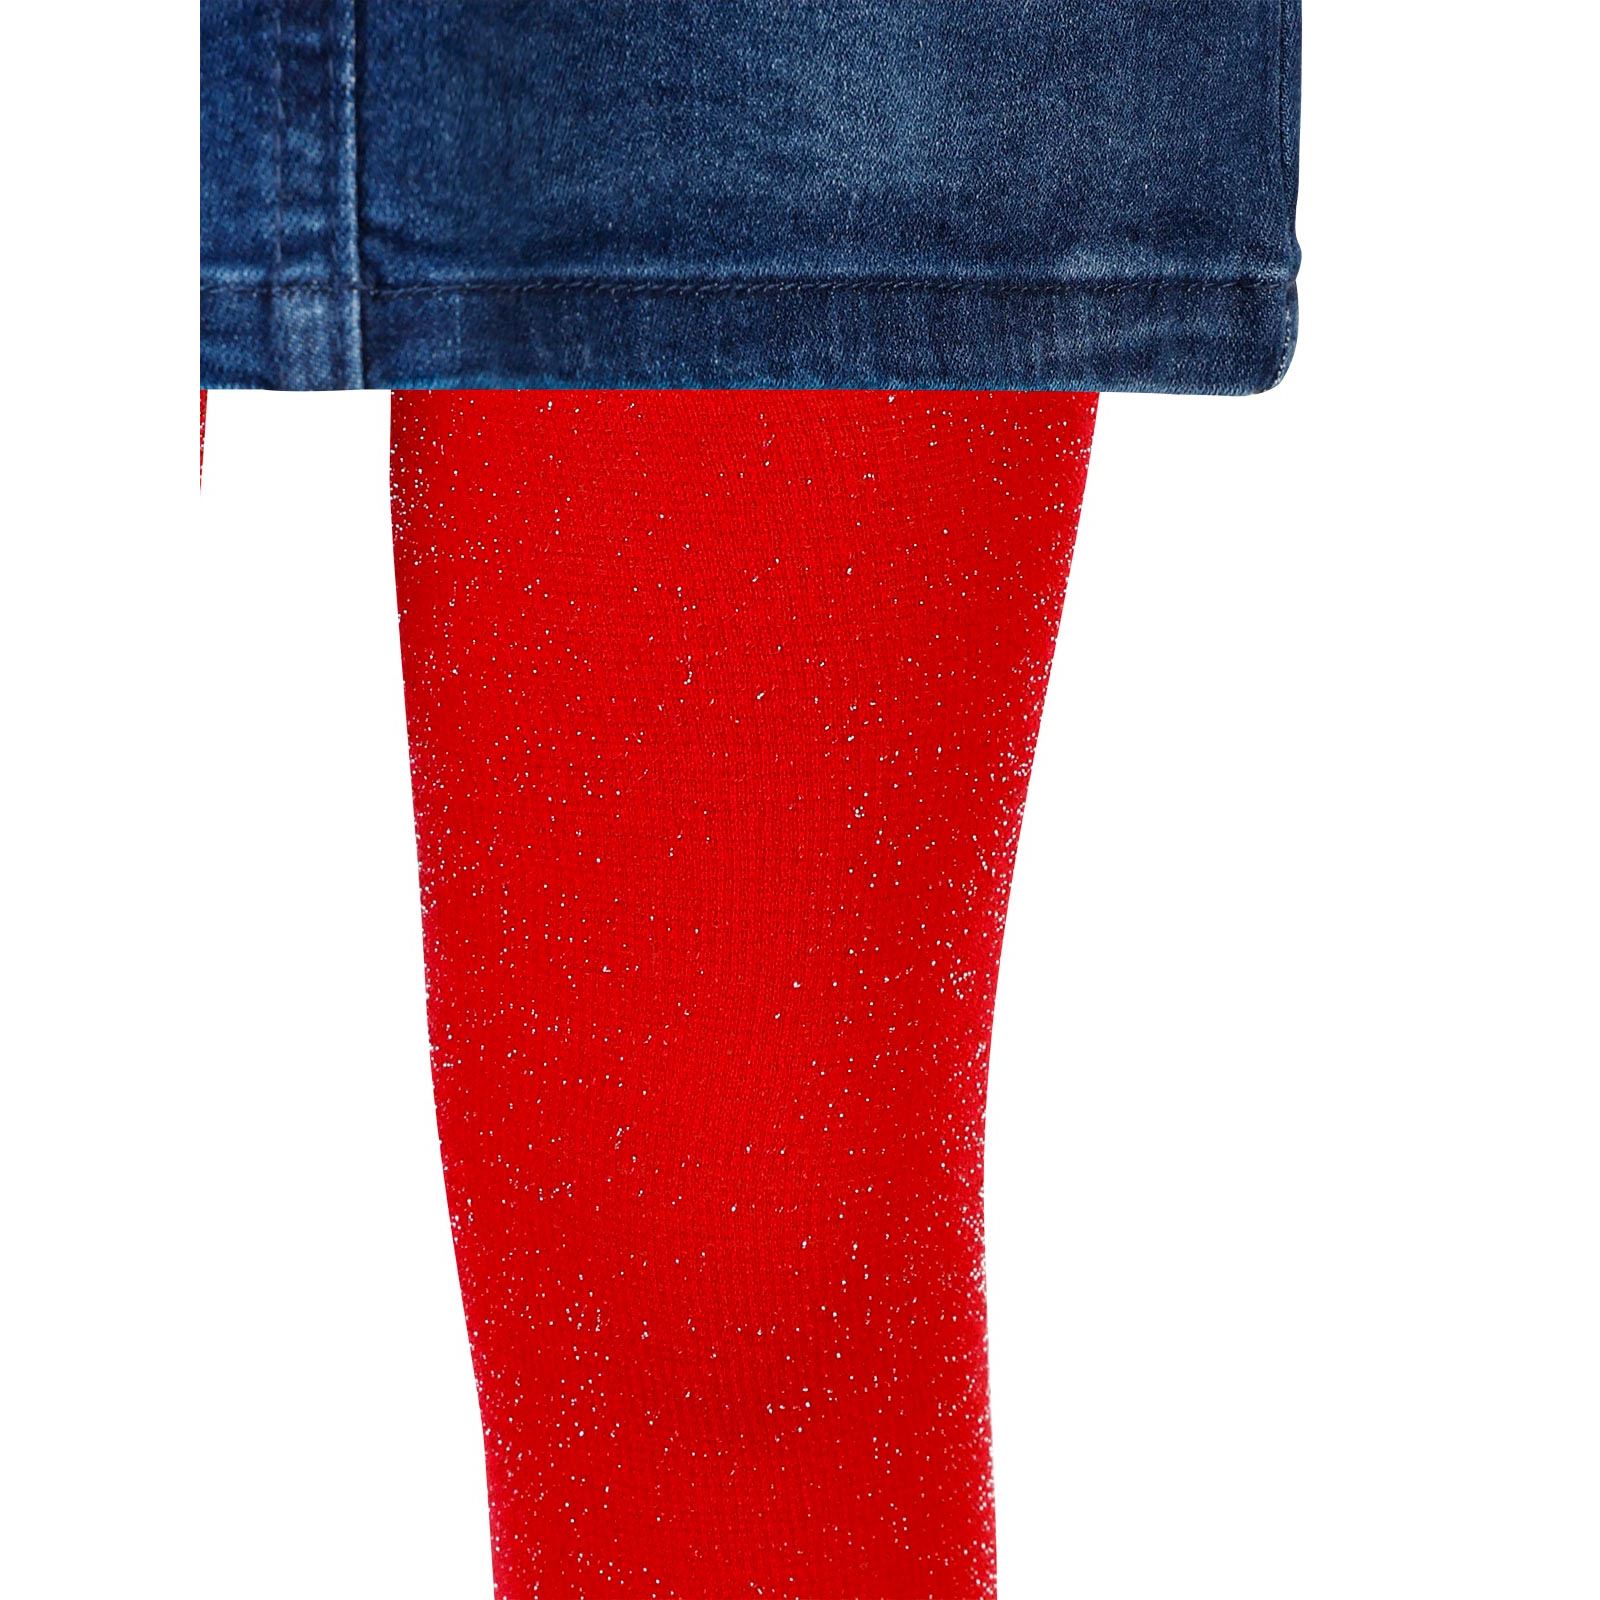 Artı Kız Çocuk Taçlı Külotlu Çorap 1-9 Yaş Kırmızı